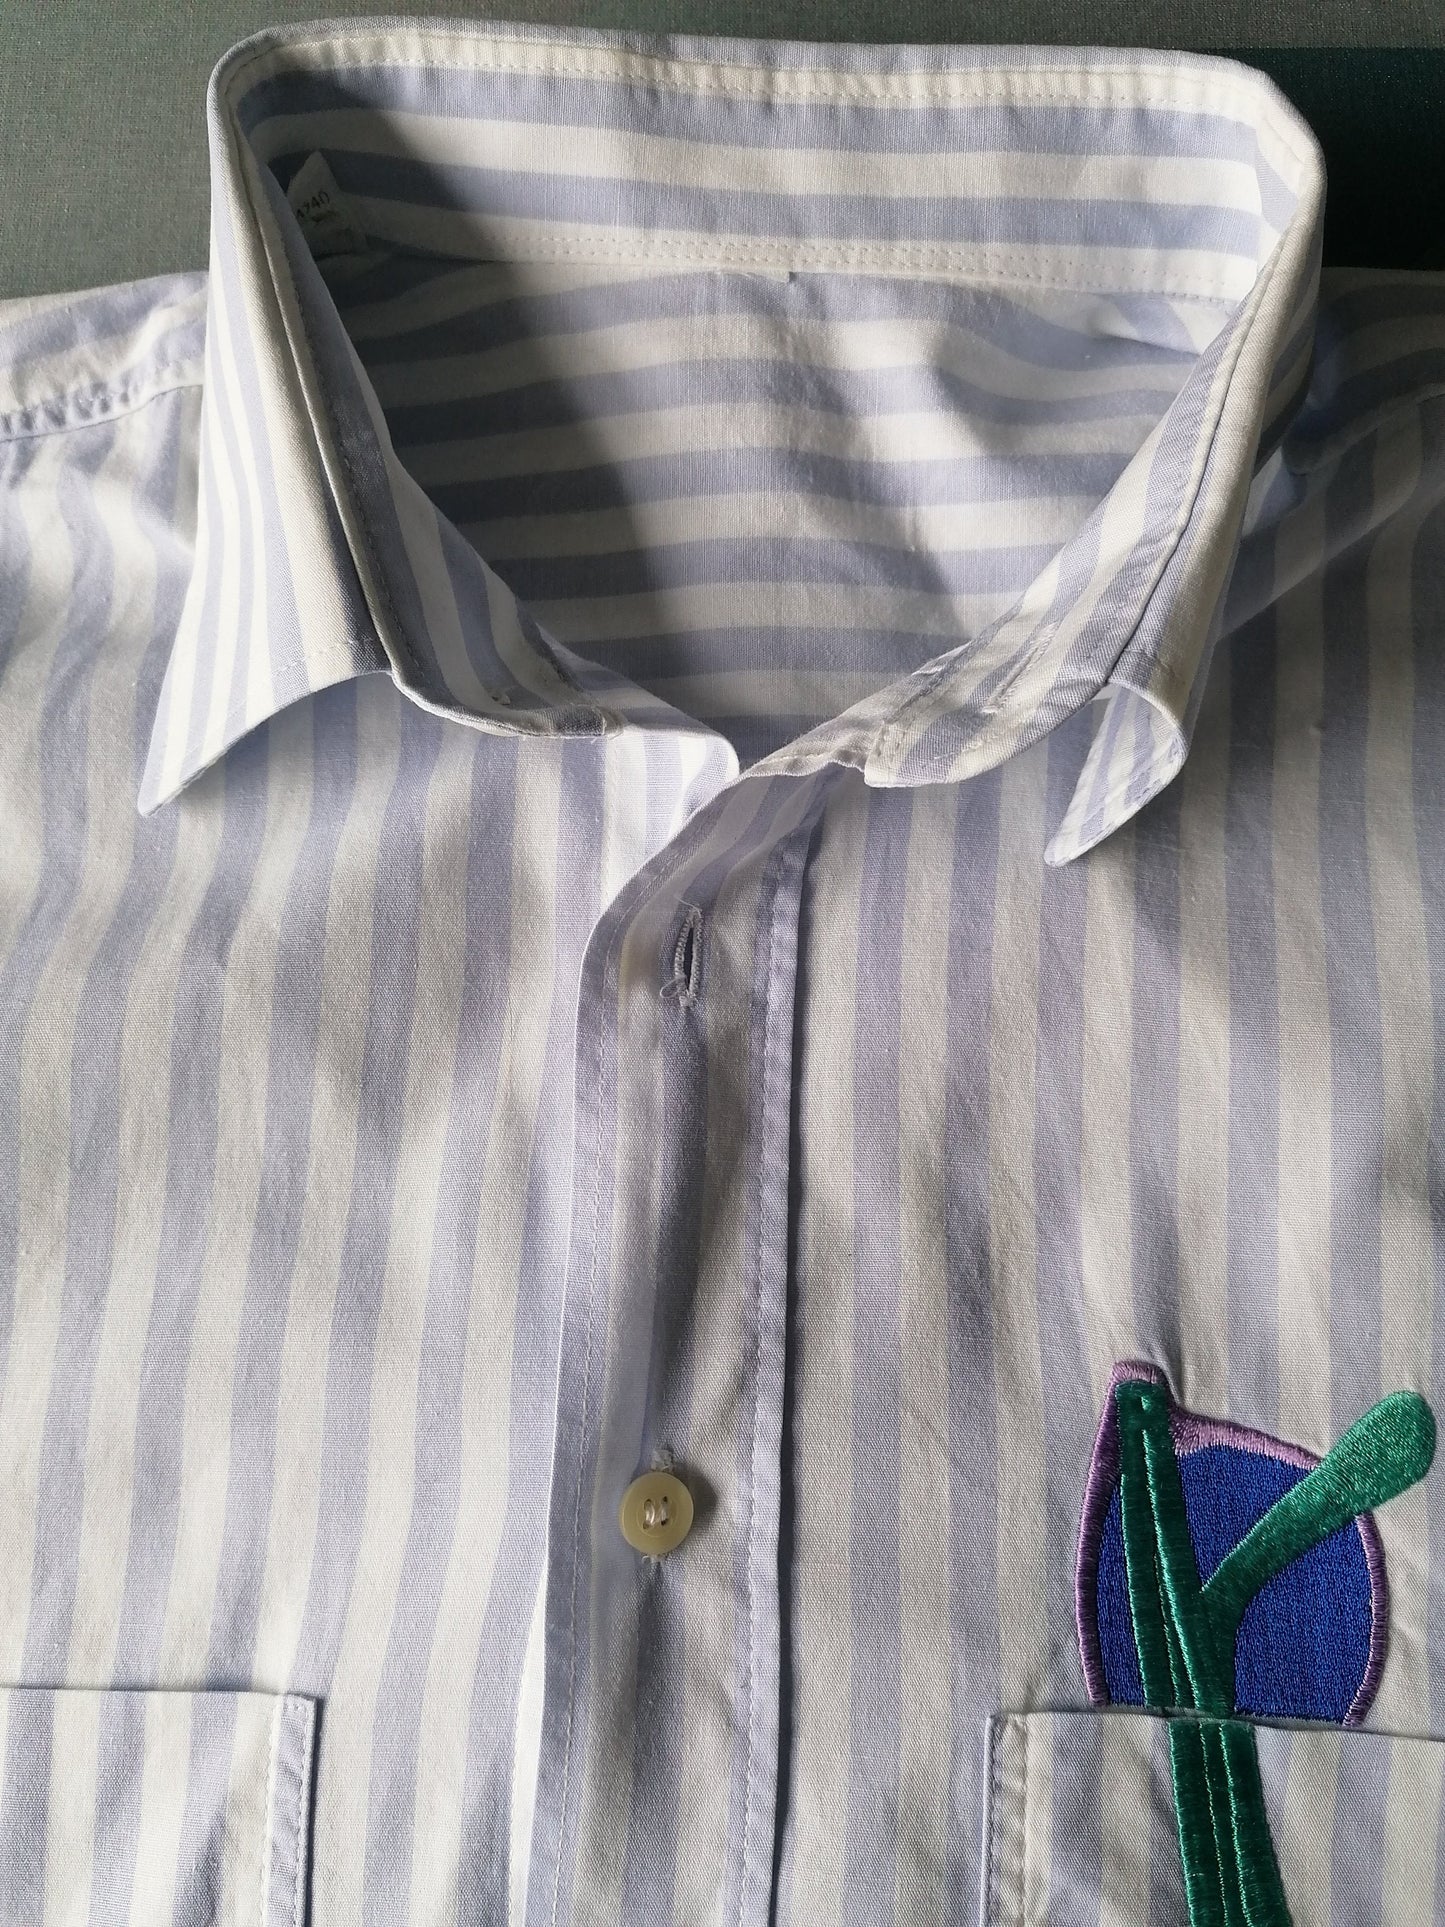 Vintage Kurzarm-Hemd. Blaues Weiß mit bestickter Sonnenbrille Akzent. Größe XL.